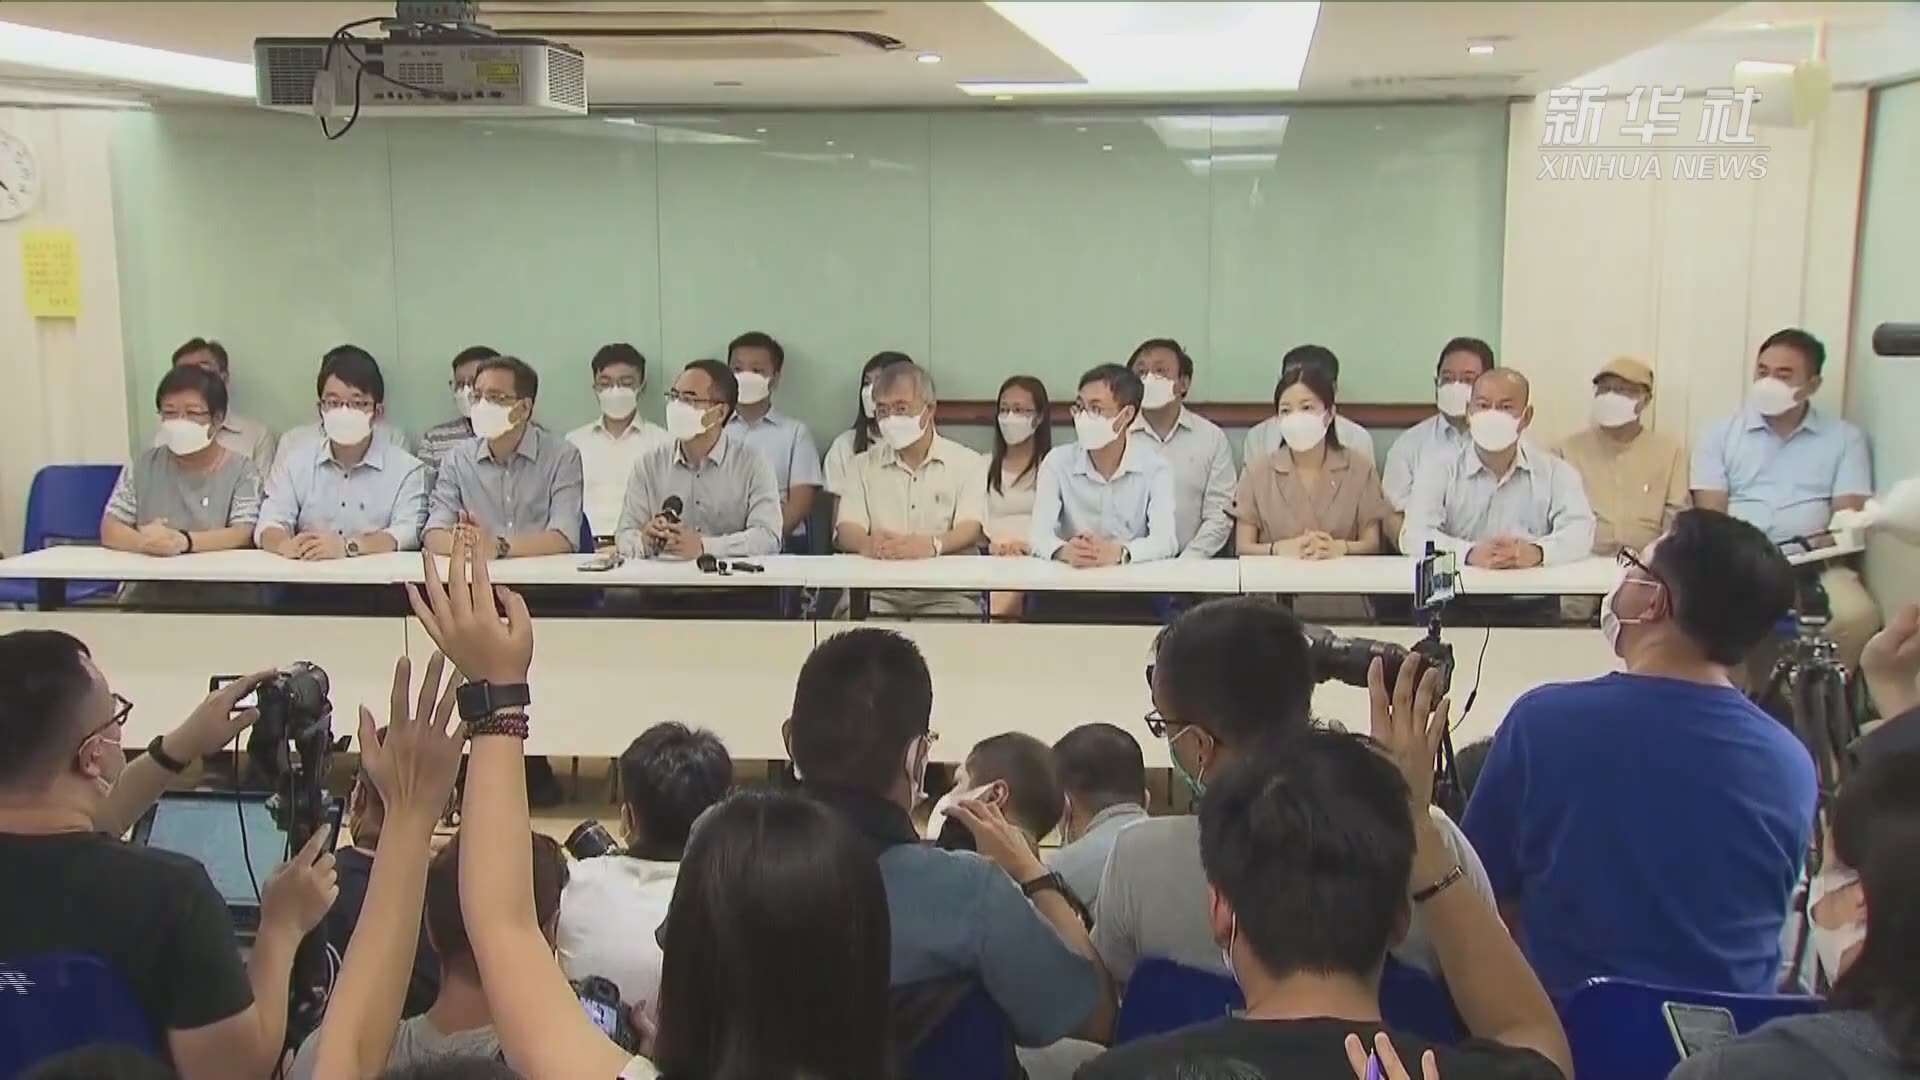 乱港毒瘤“香港教育专业人员协会”宣布解散